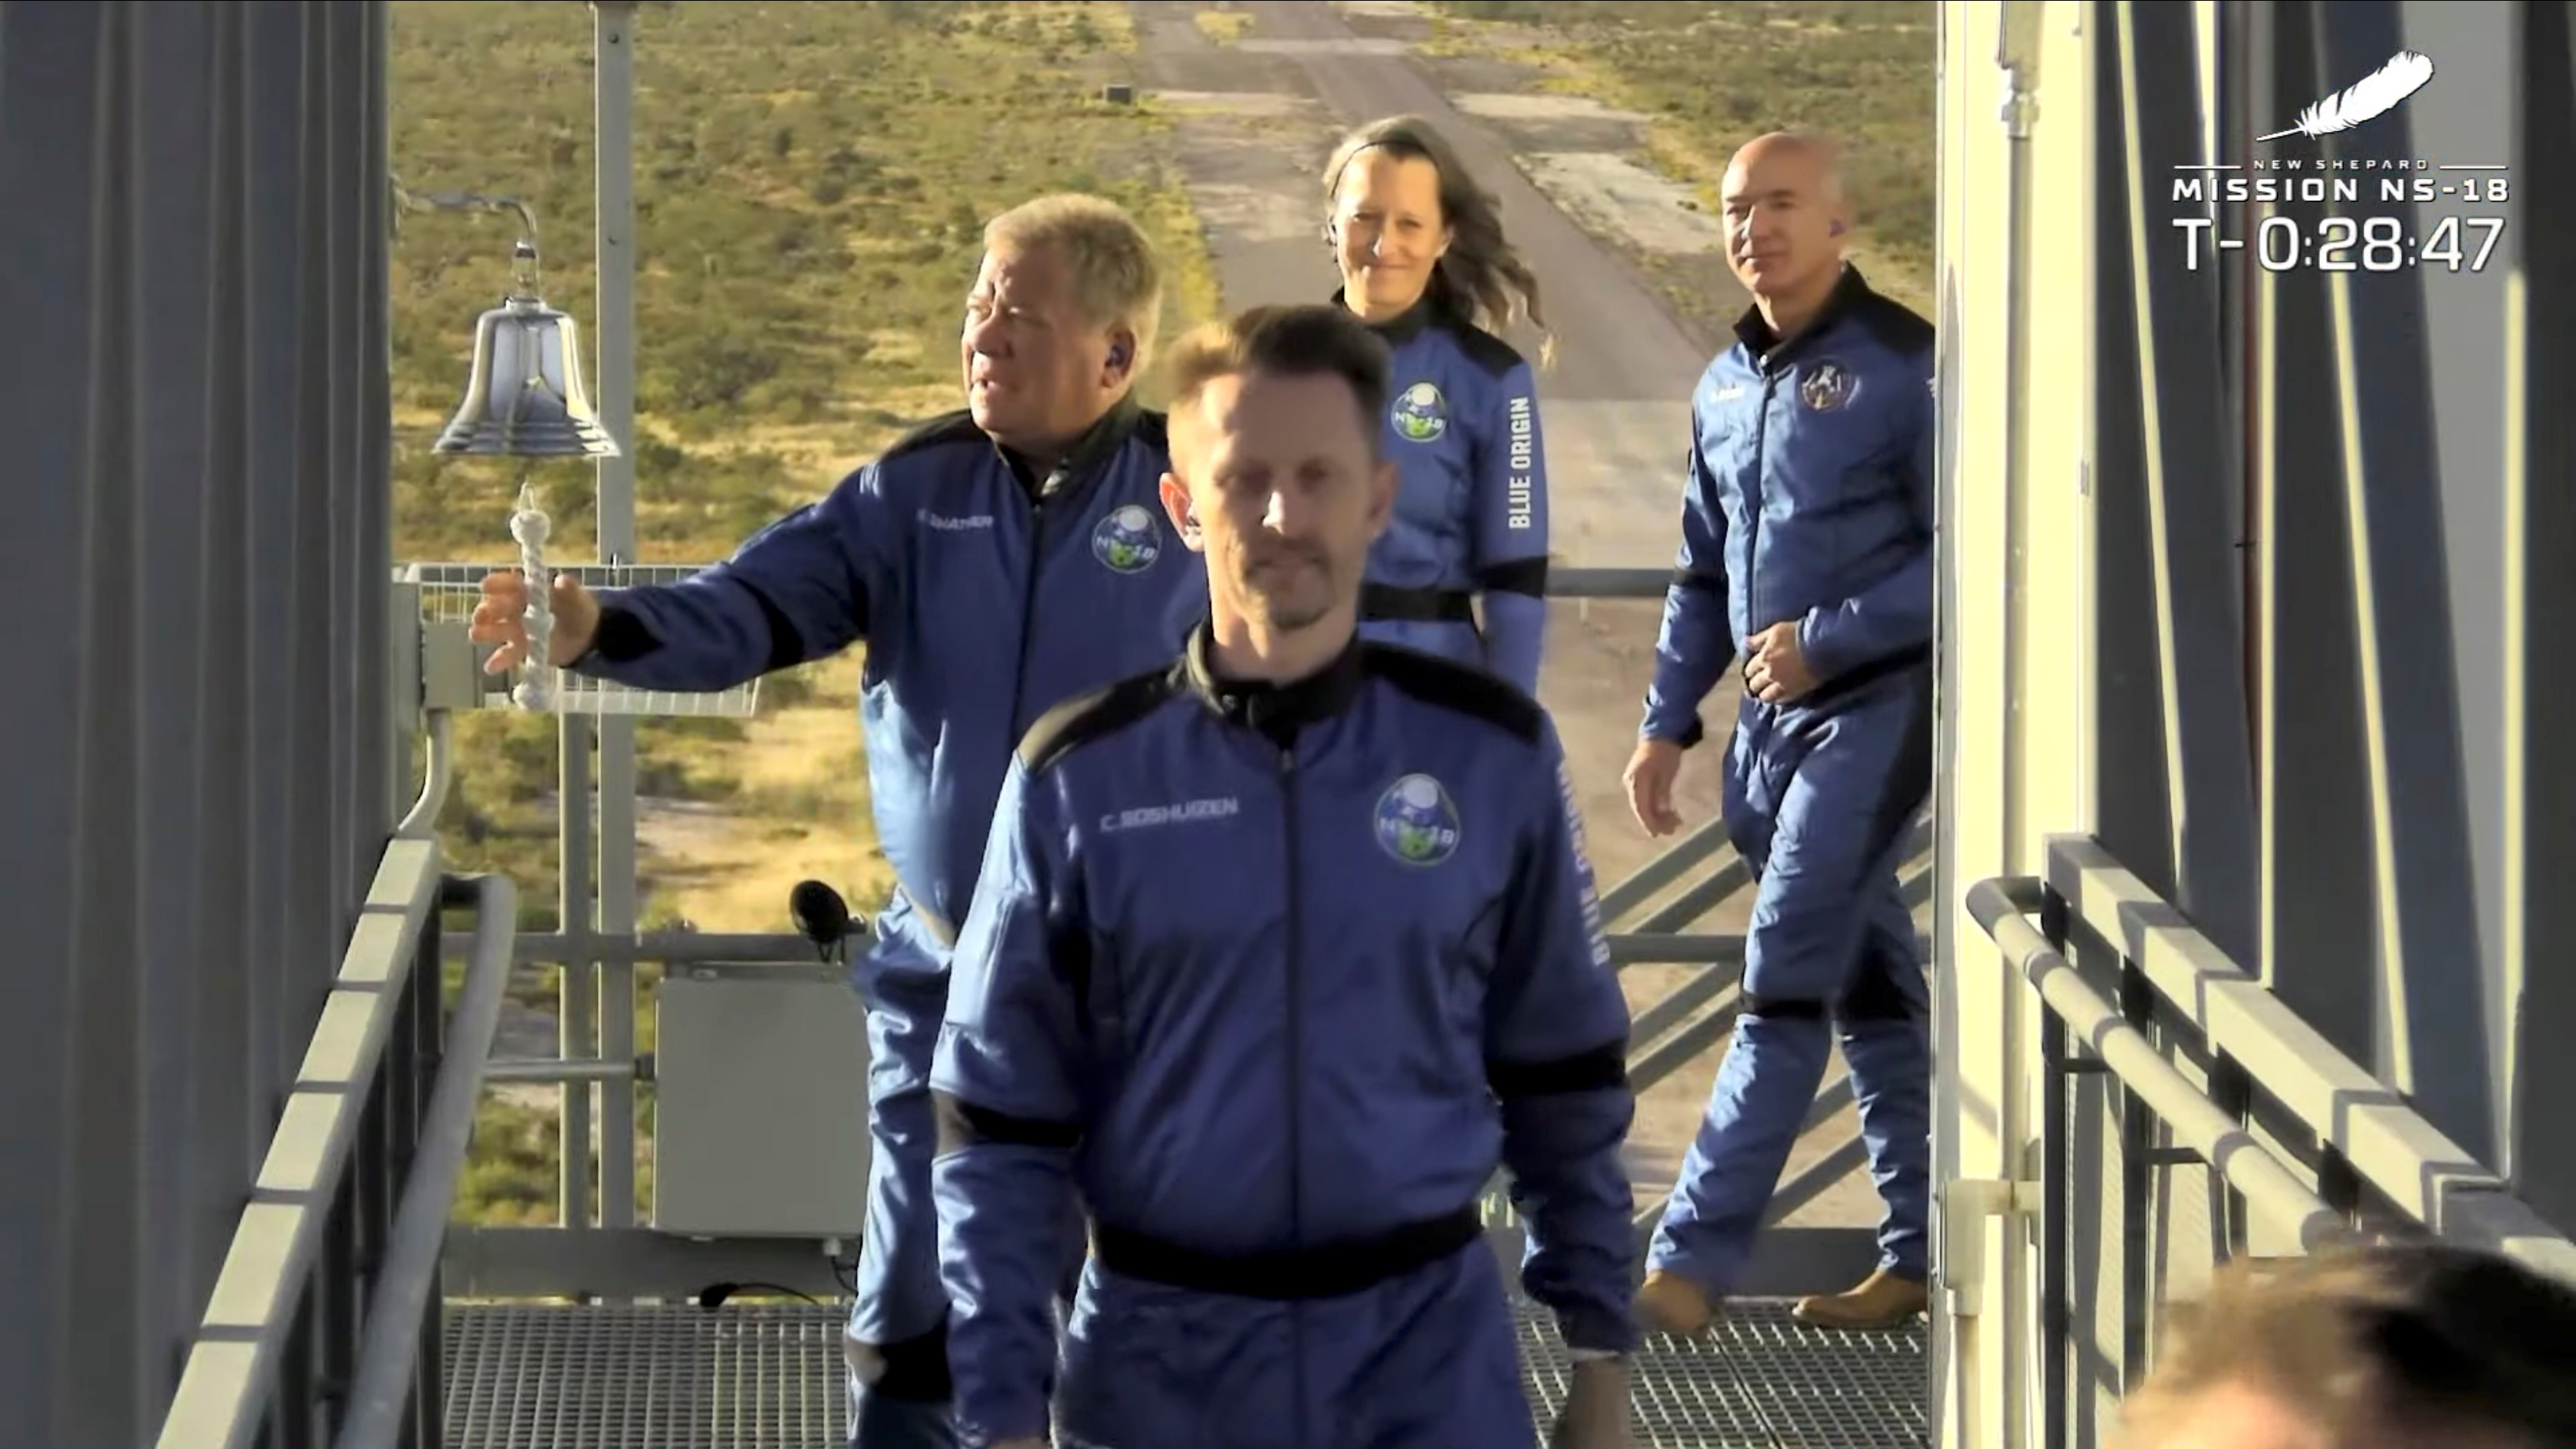 La tripulación antes de subirse a la nave espacial (Blue Origin via REUTERS)
